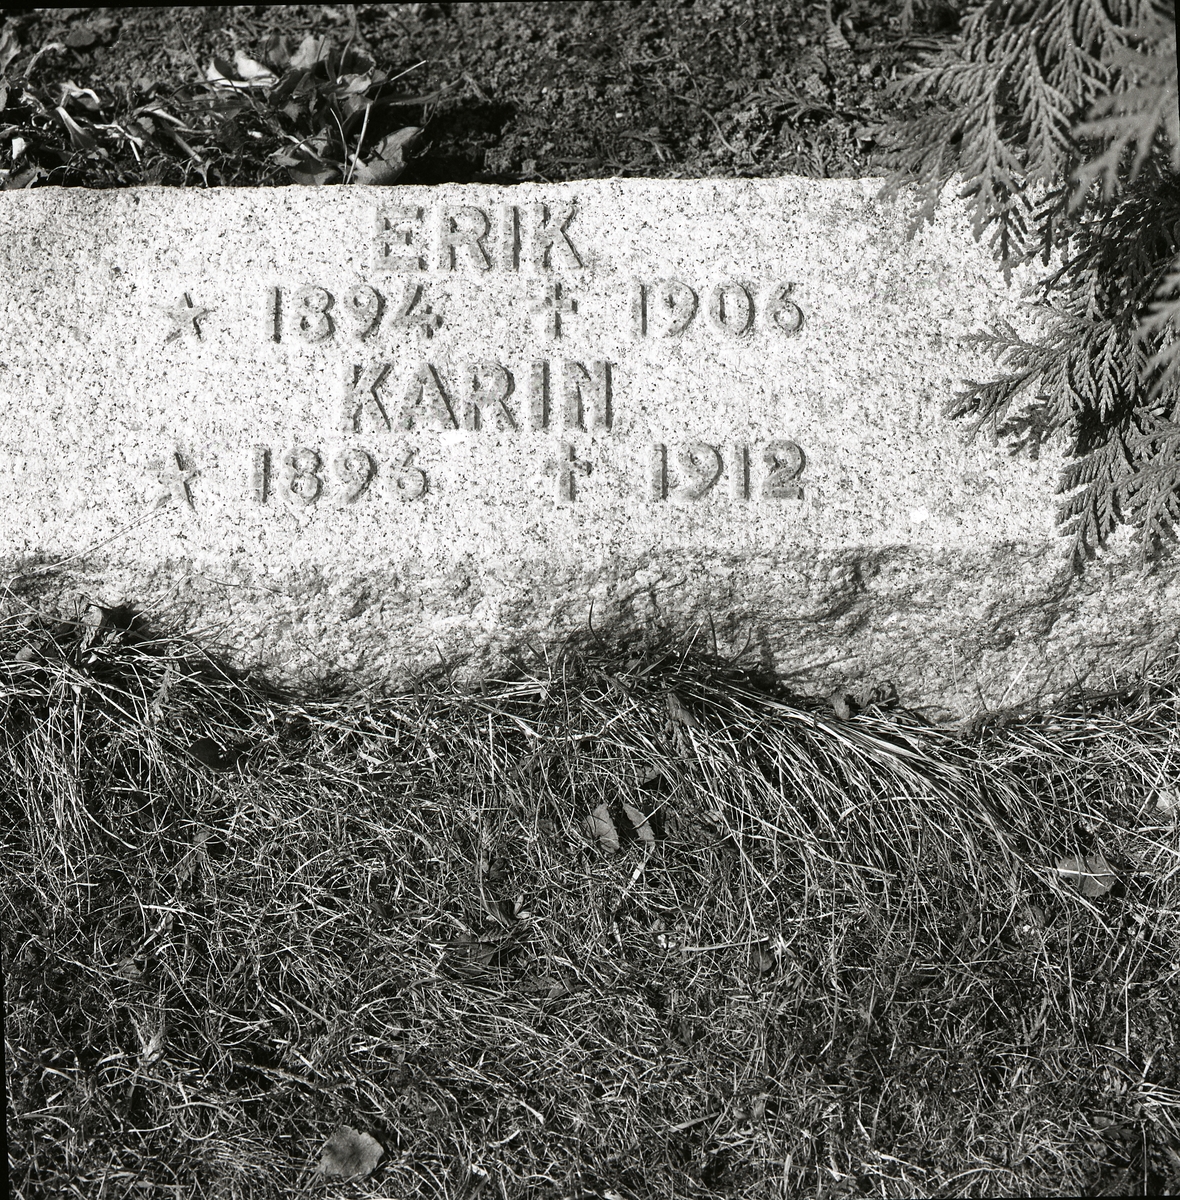 Gravsten med inskiption, Rengsjö kyrkogård. Kristi himmelsfärdsdag, 7 maj 1986.